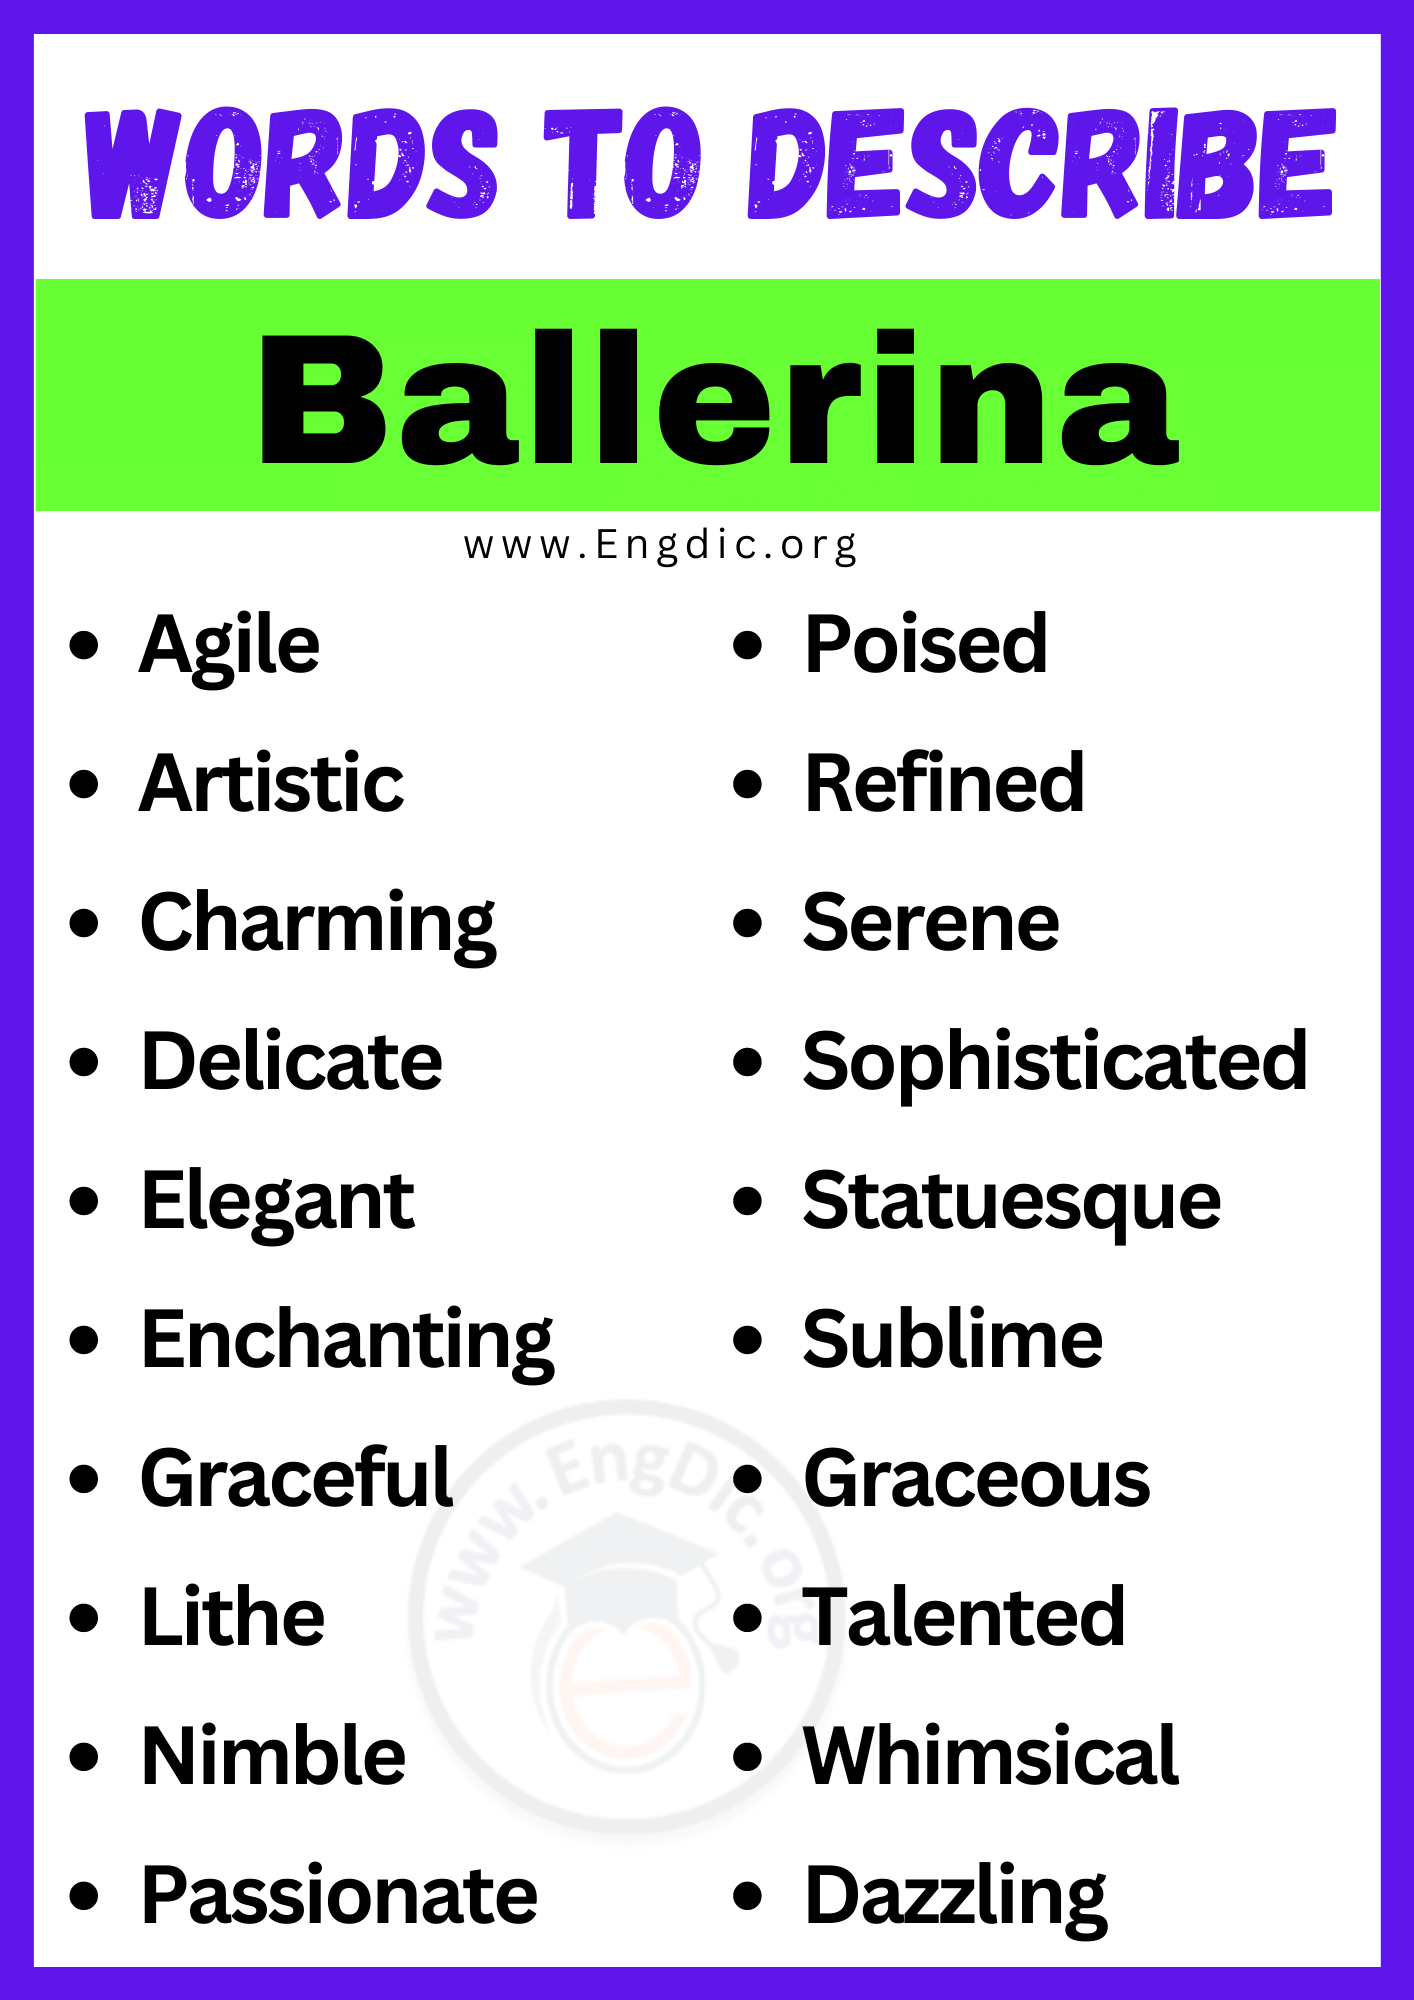 Words to Describe Ballerina